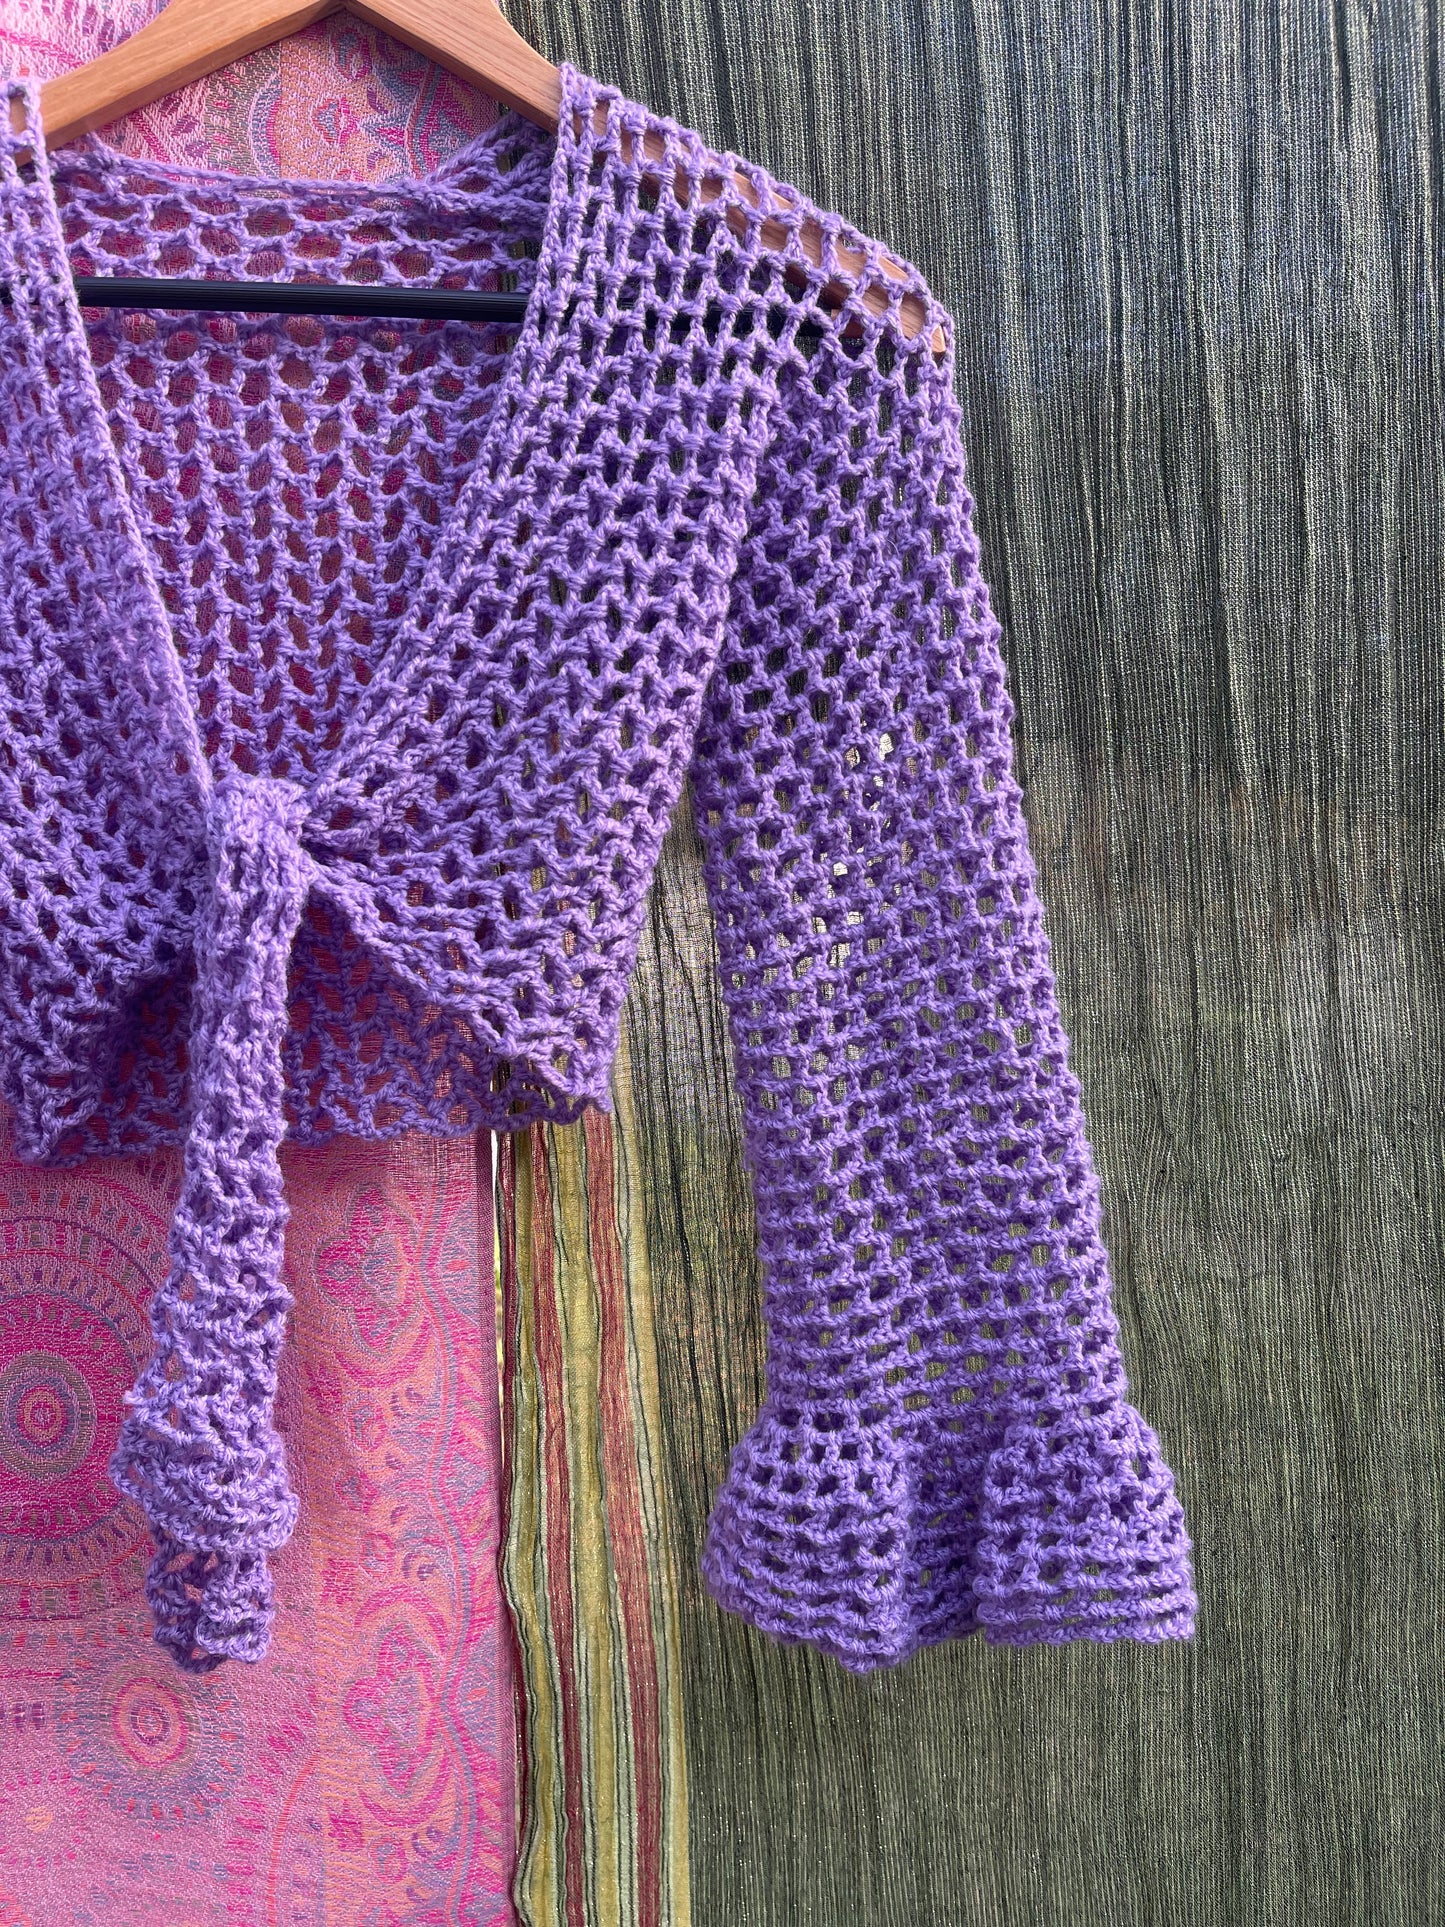 Lilac crochet tie top